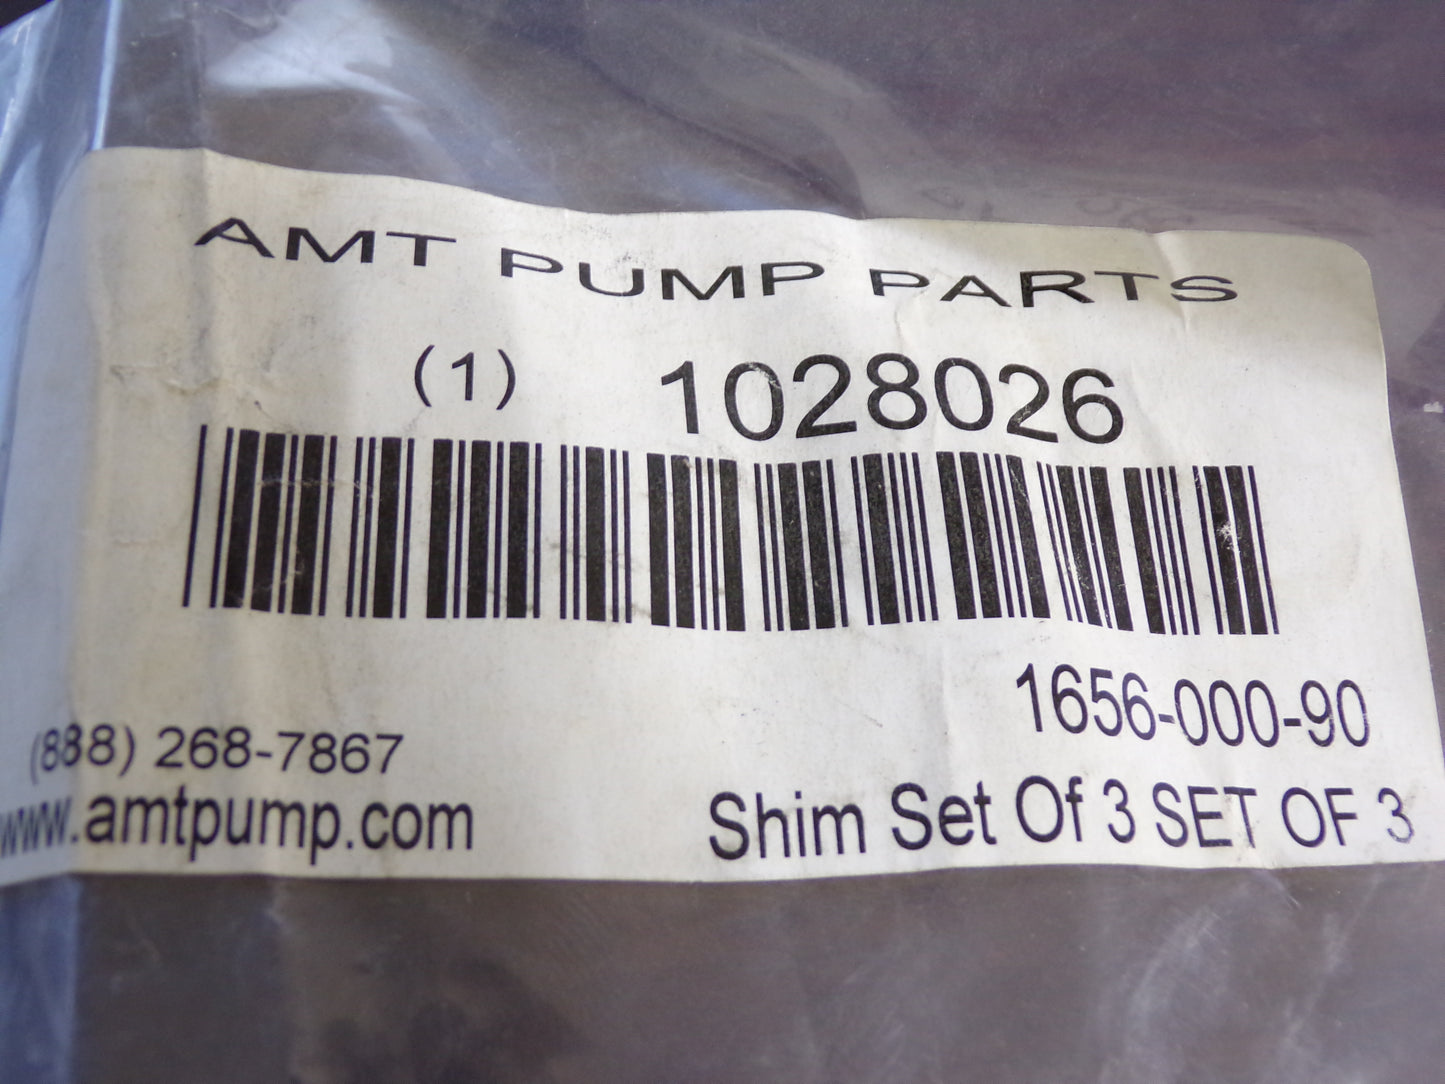 AMT Pumps, Impeller Shim Set, 1656-000-90, Set of 3 (CR00568-WTA14)